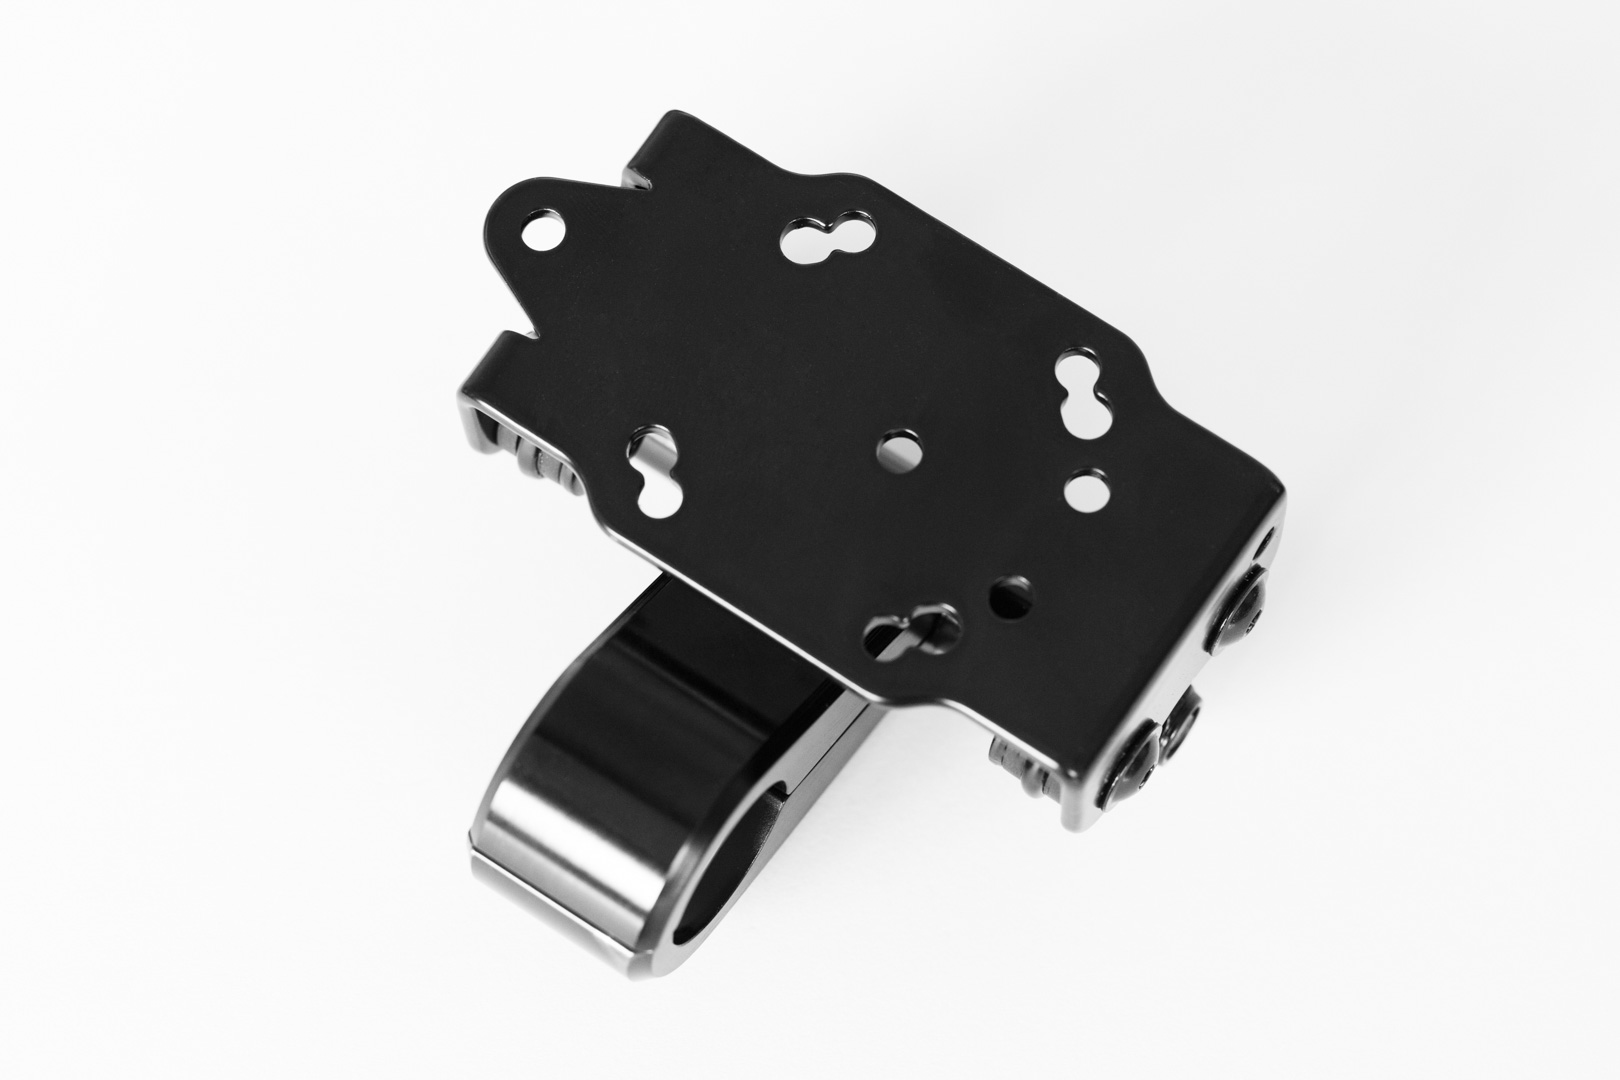 Image of Supporto GPS SW-Motech con morsetto manubrio - Per manubrio Ø 22 mm. Smorzato dalle vibrazioni. Nero., nero